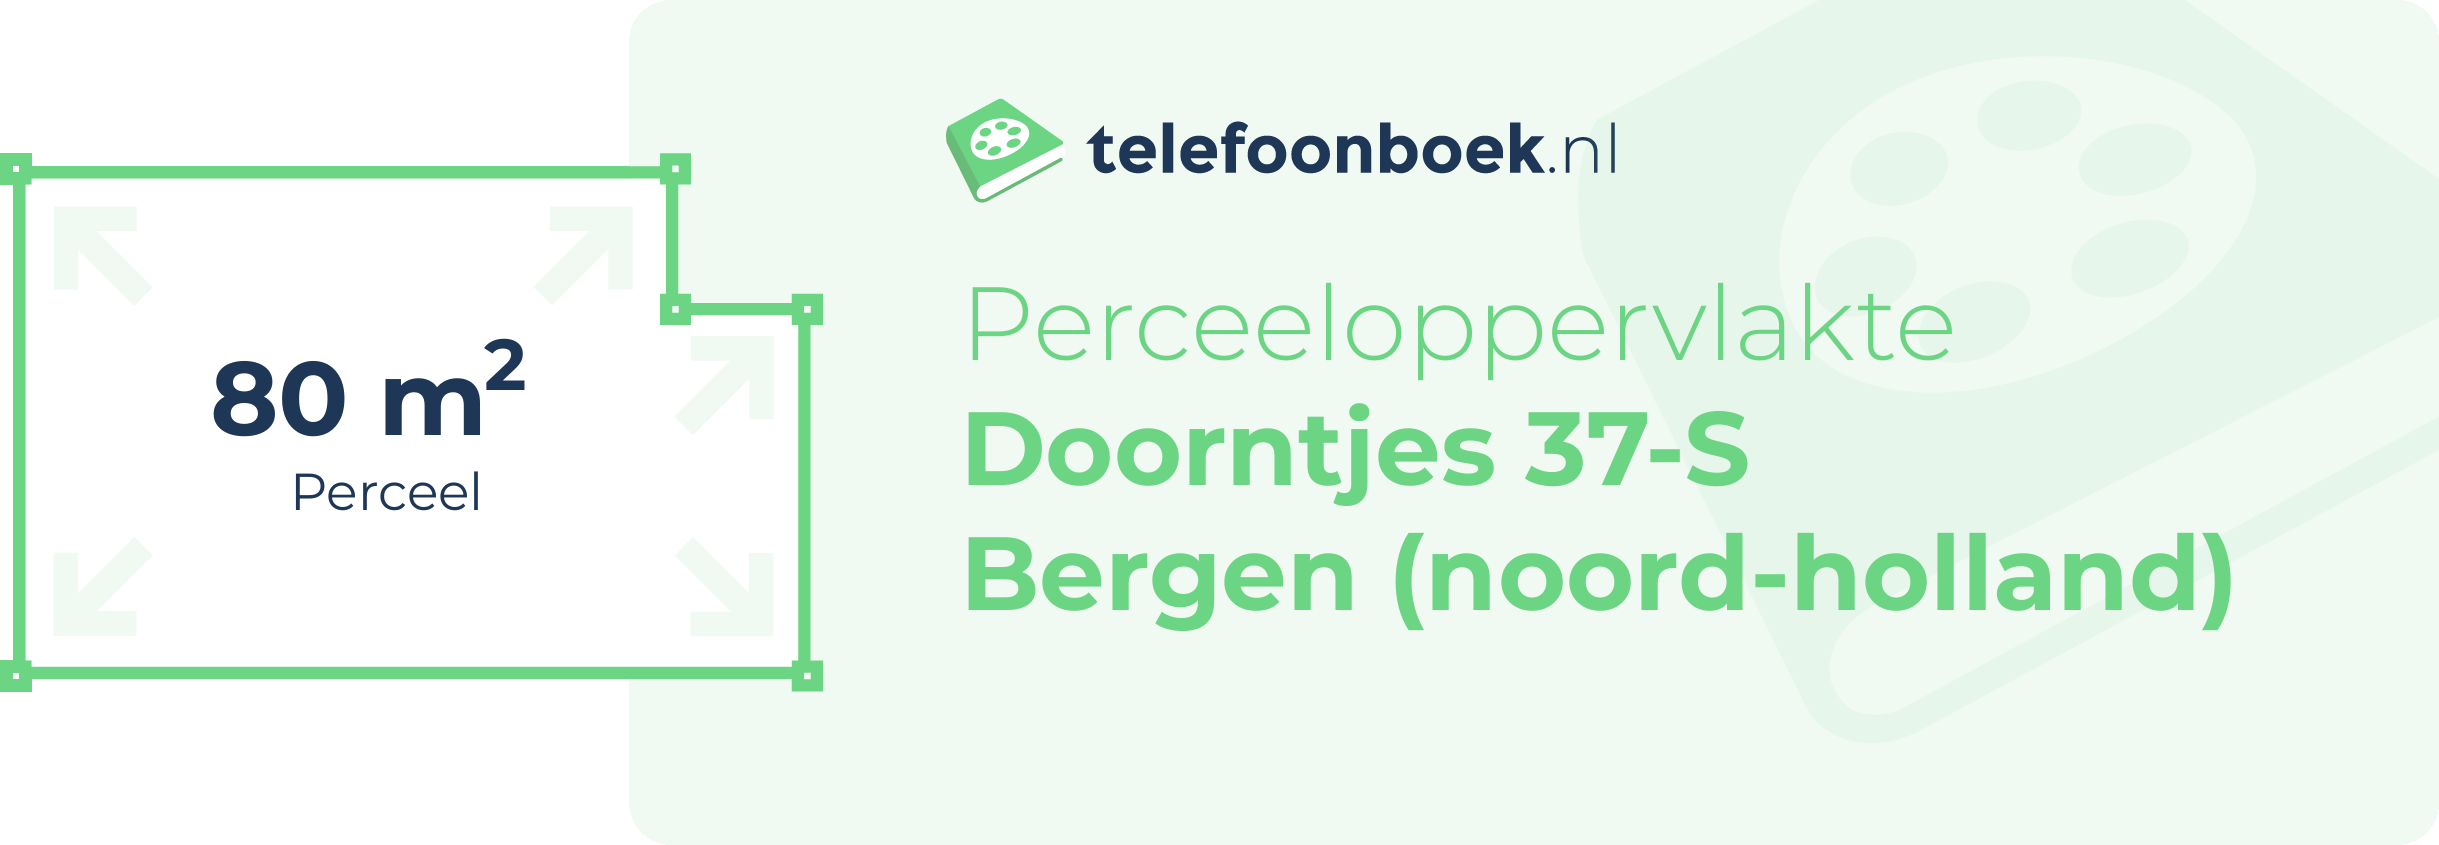 Perceeloppervlakte Doorntjes 37-S Bergen (Noord-Holland)